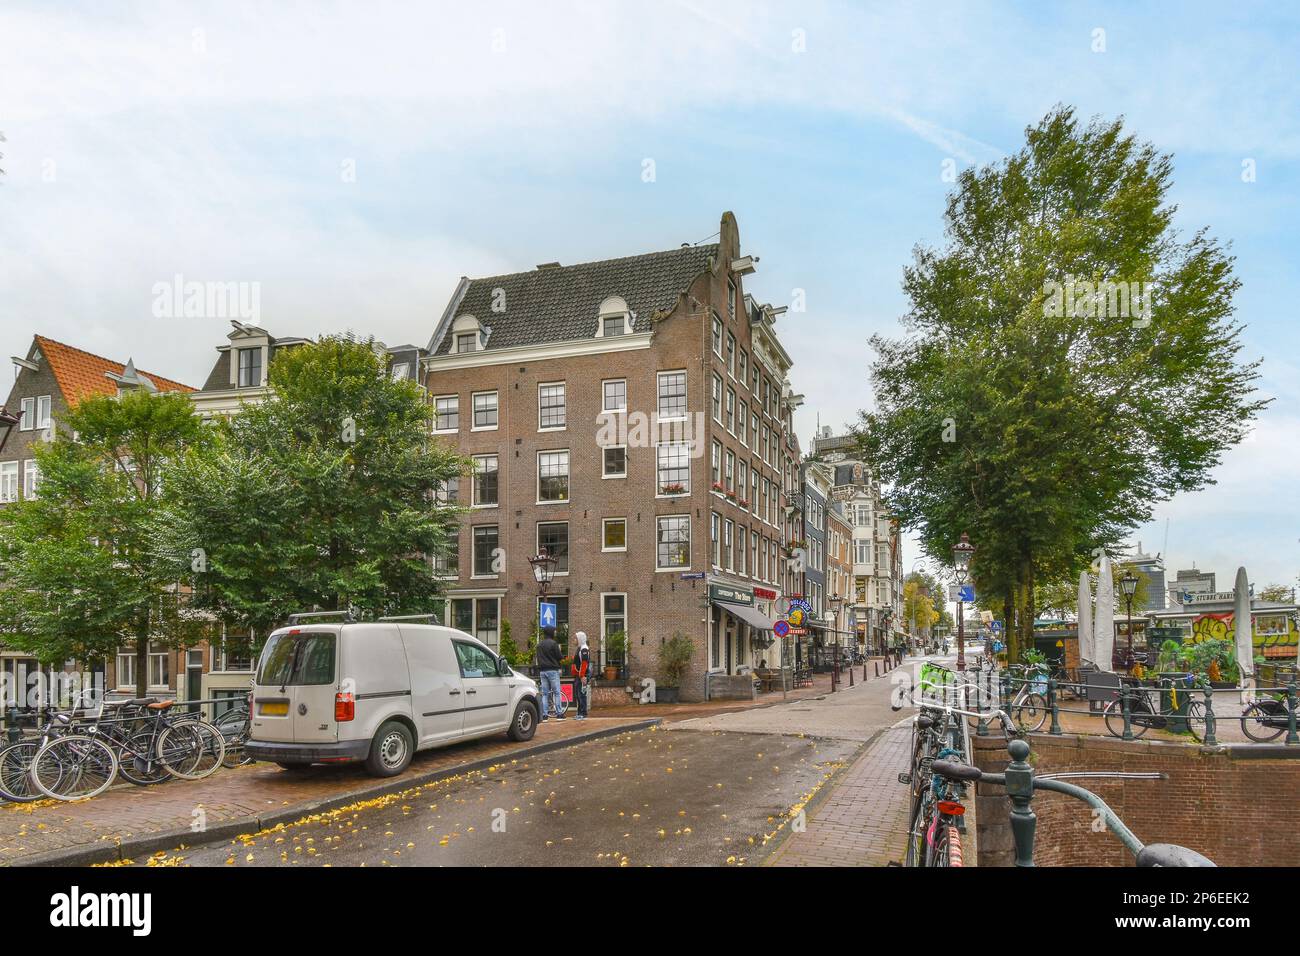 Amsterdam, Paesi Bassi - 10 aprile, 2021: Una strada cittadina con molti edifici e biciclette parcheggiate sul lato della strada, di fronte a un furgone bianco Foto Stock